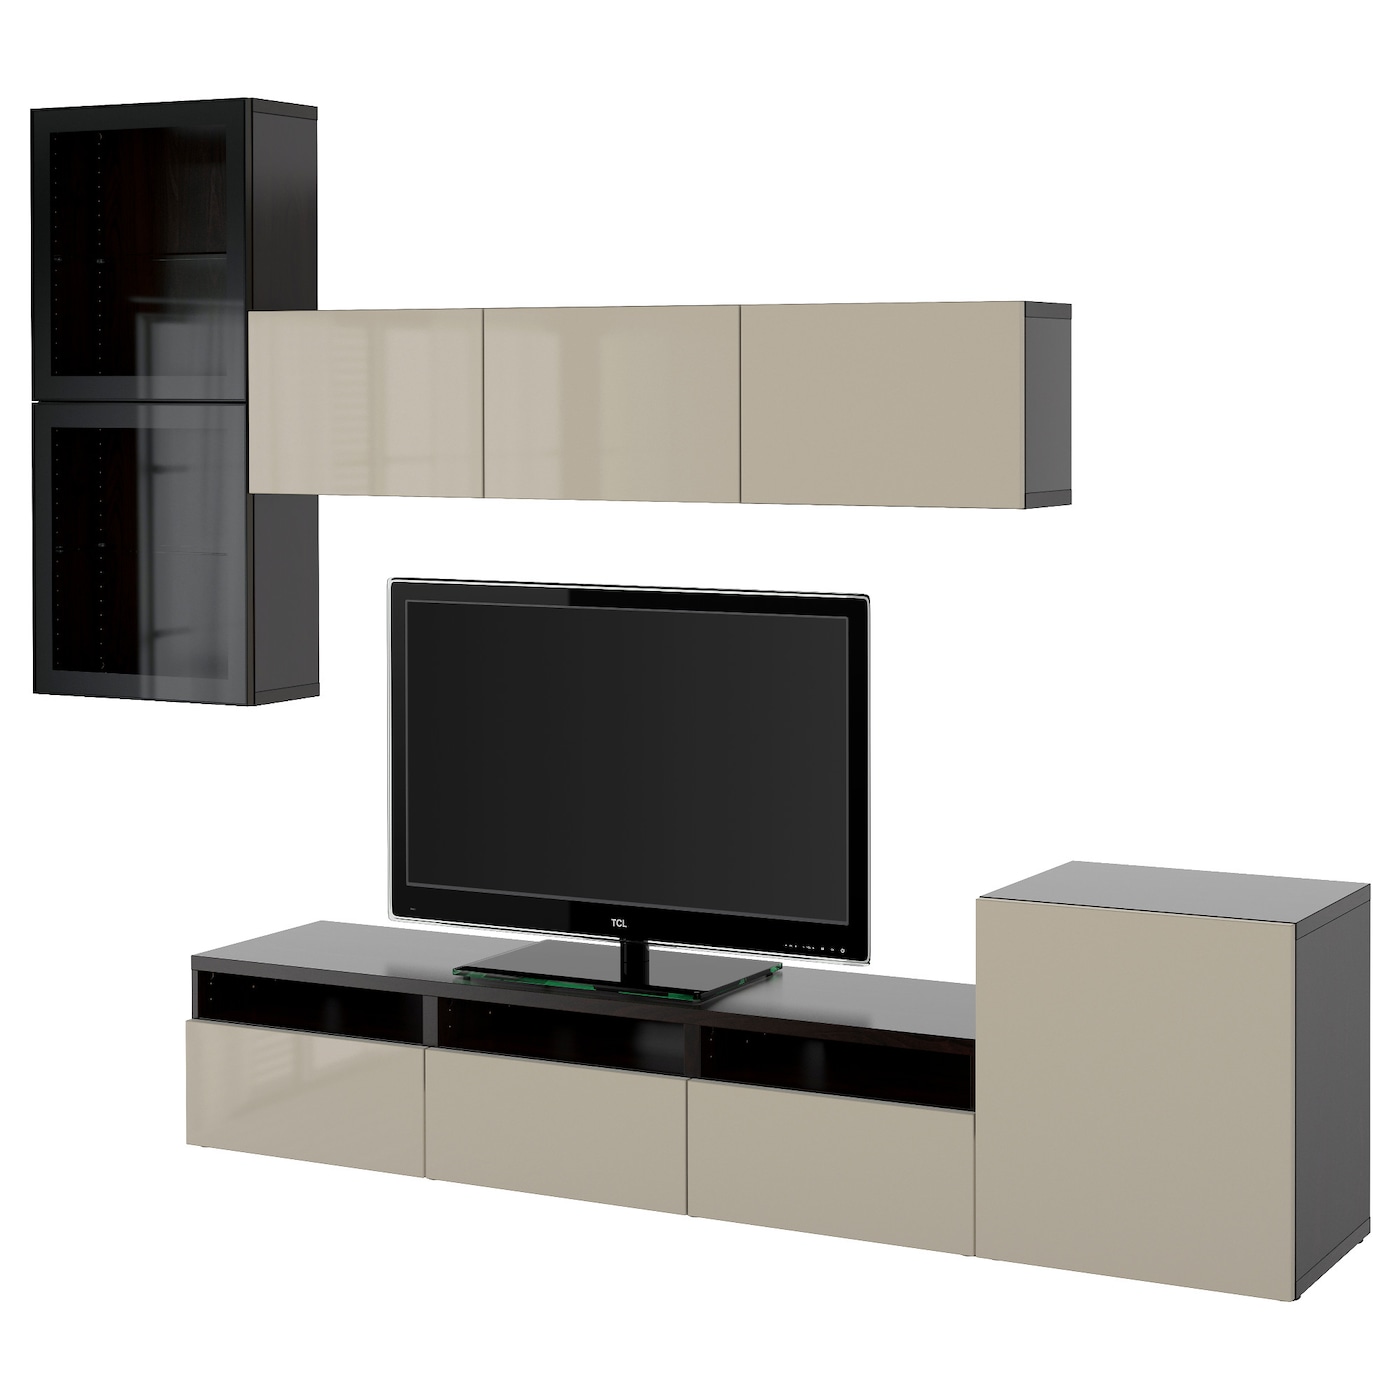 Комбинация для хранения ТВ - IKEA BESTÅ/BESTA, 211x42x300см, черный/светло-коричневый, БЕСТО ИКЕА